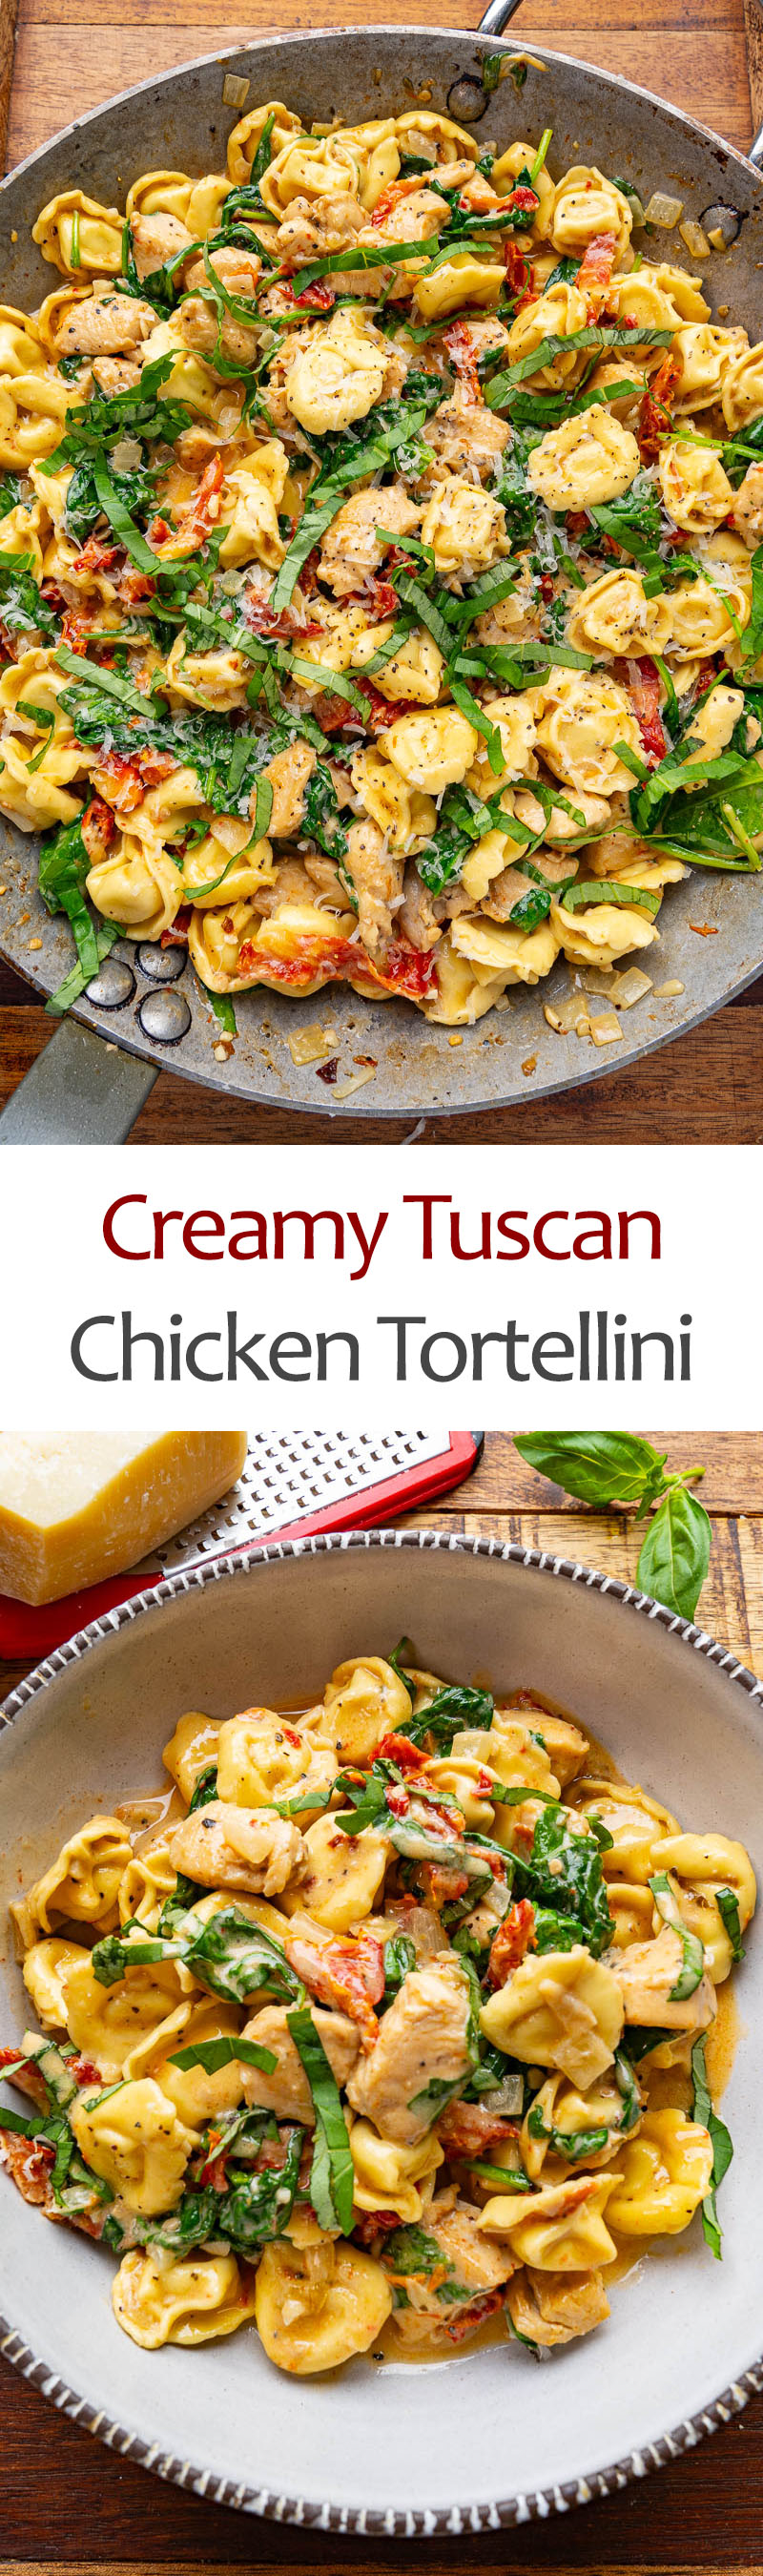 Creamy Tuscan Chicken Tortellini